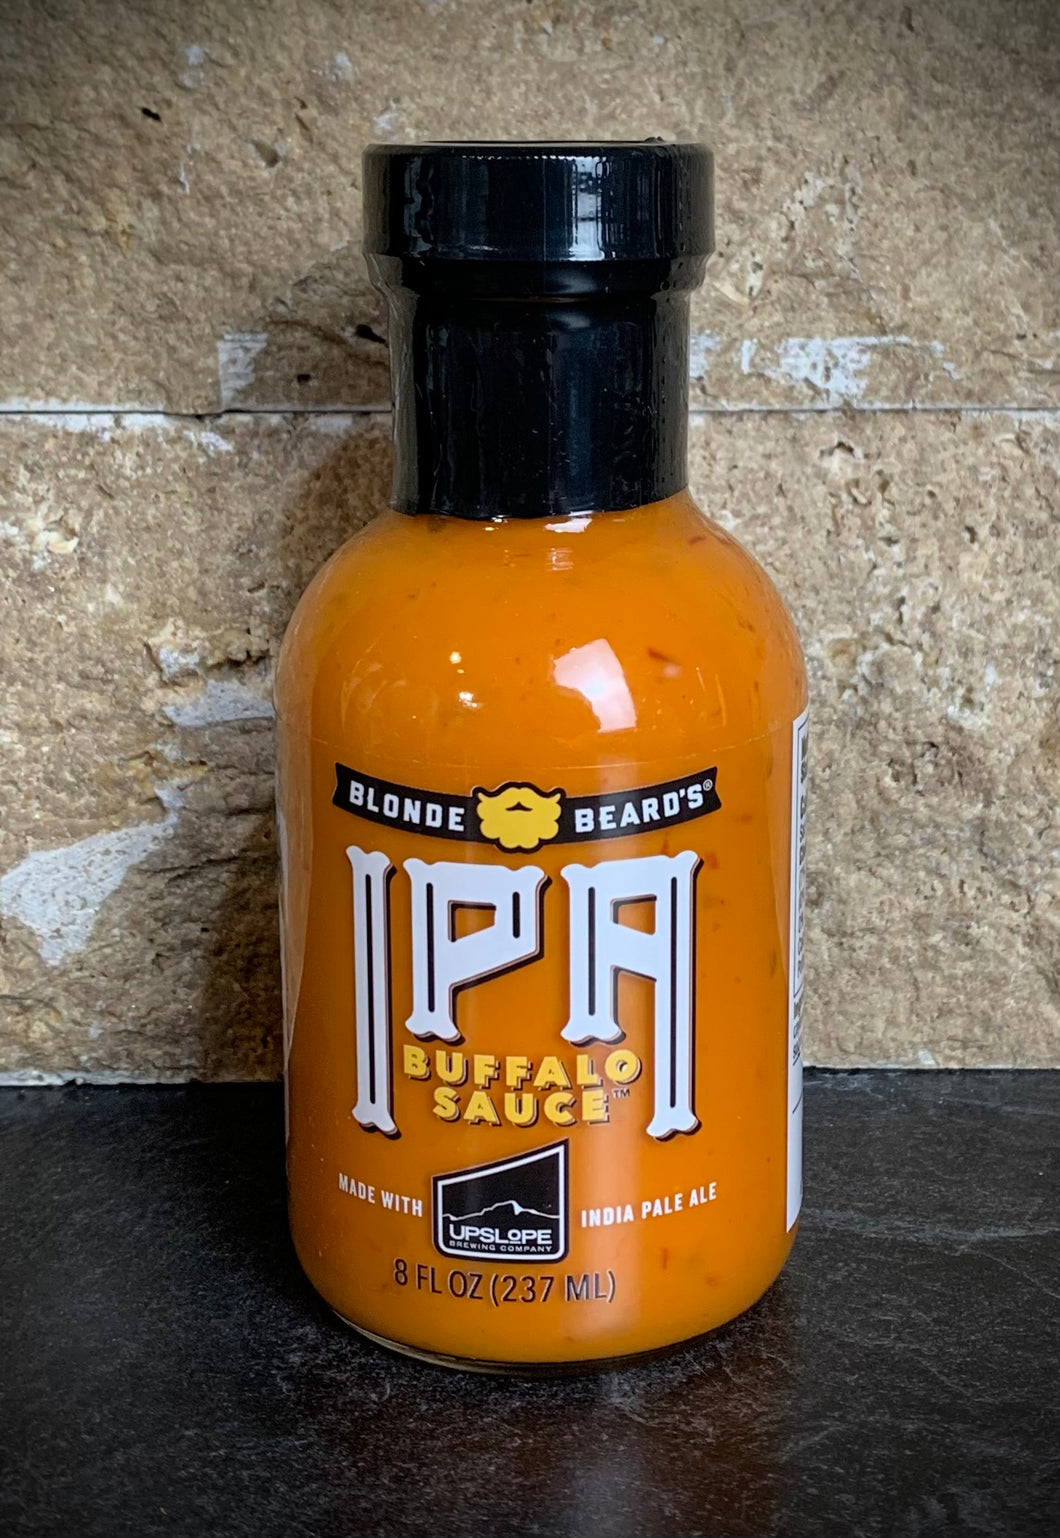 IPA Buffalo Sauce